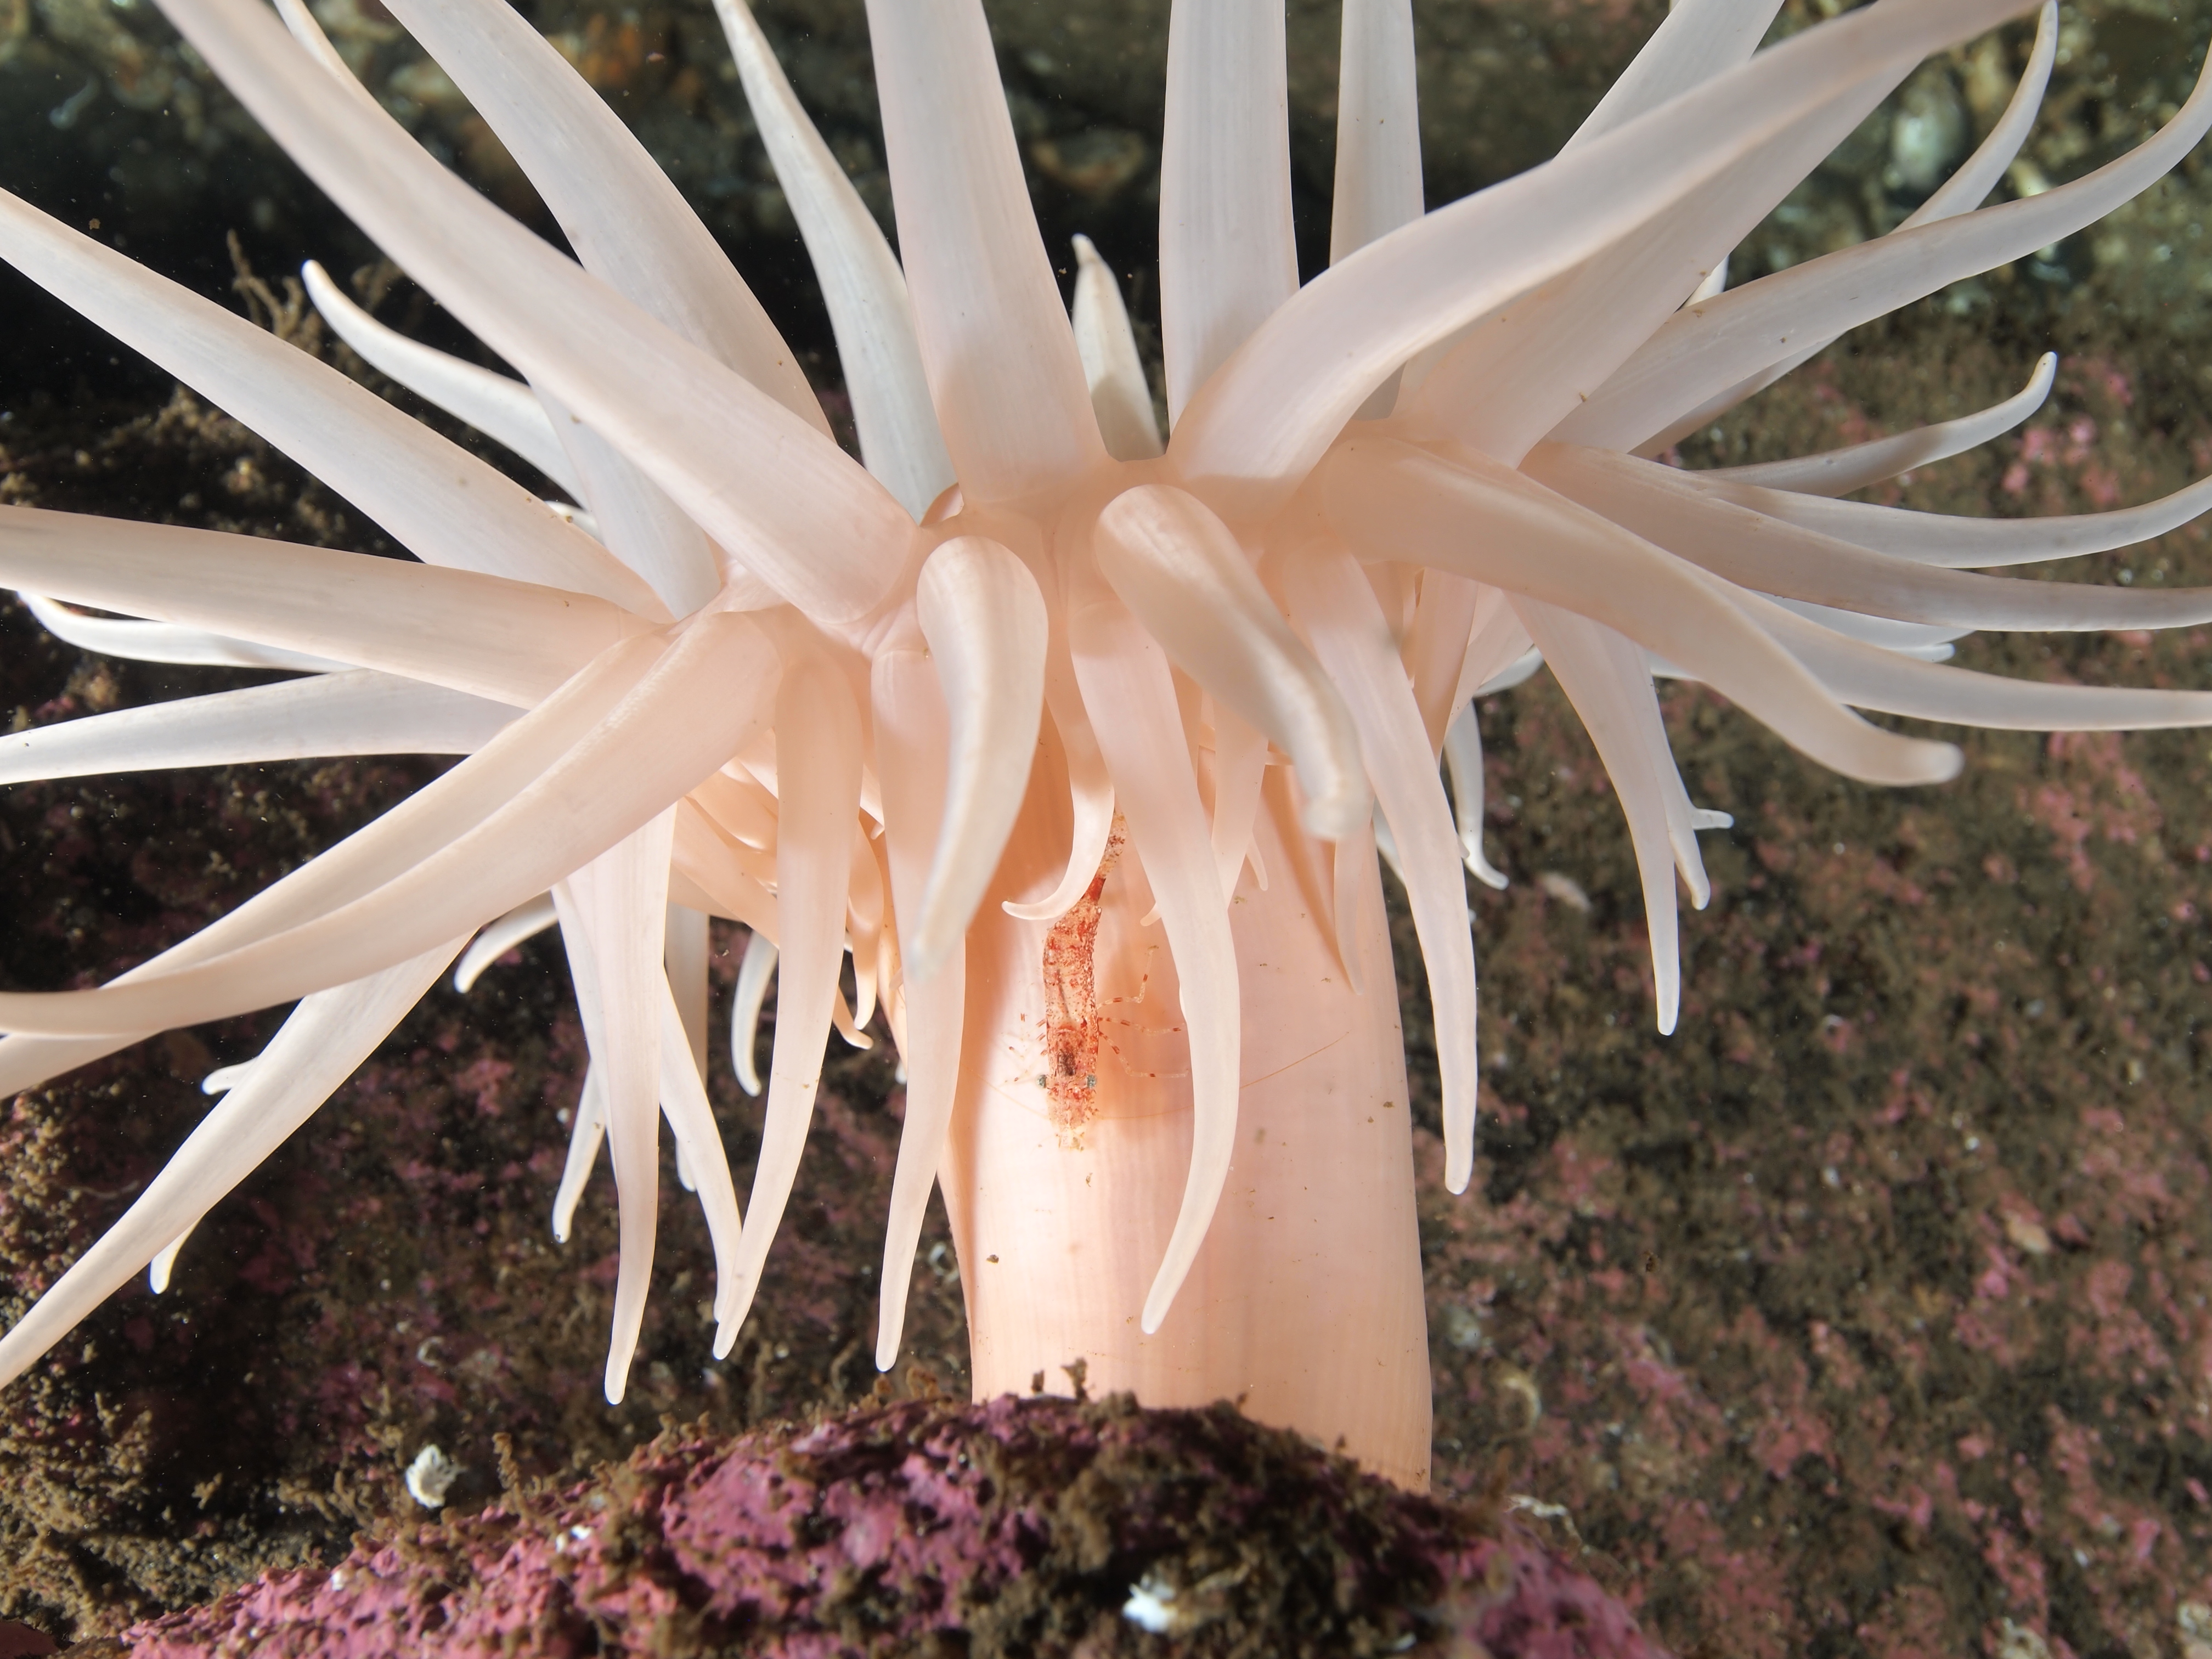 Schoonderwoerd_noorwegen-deeplet-sea-anemone-kopie